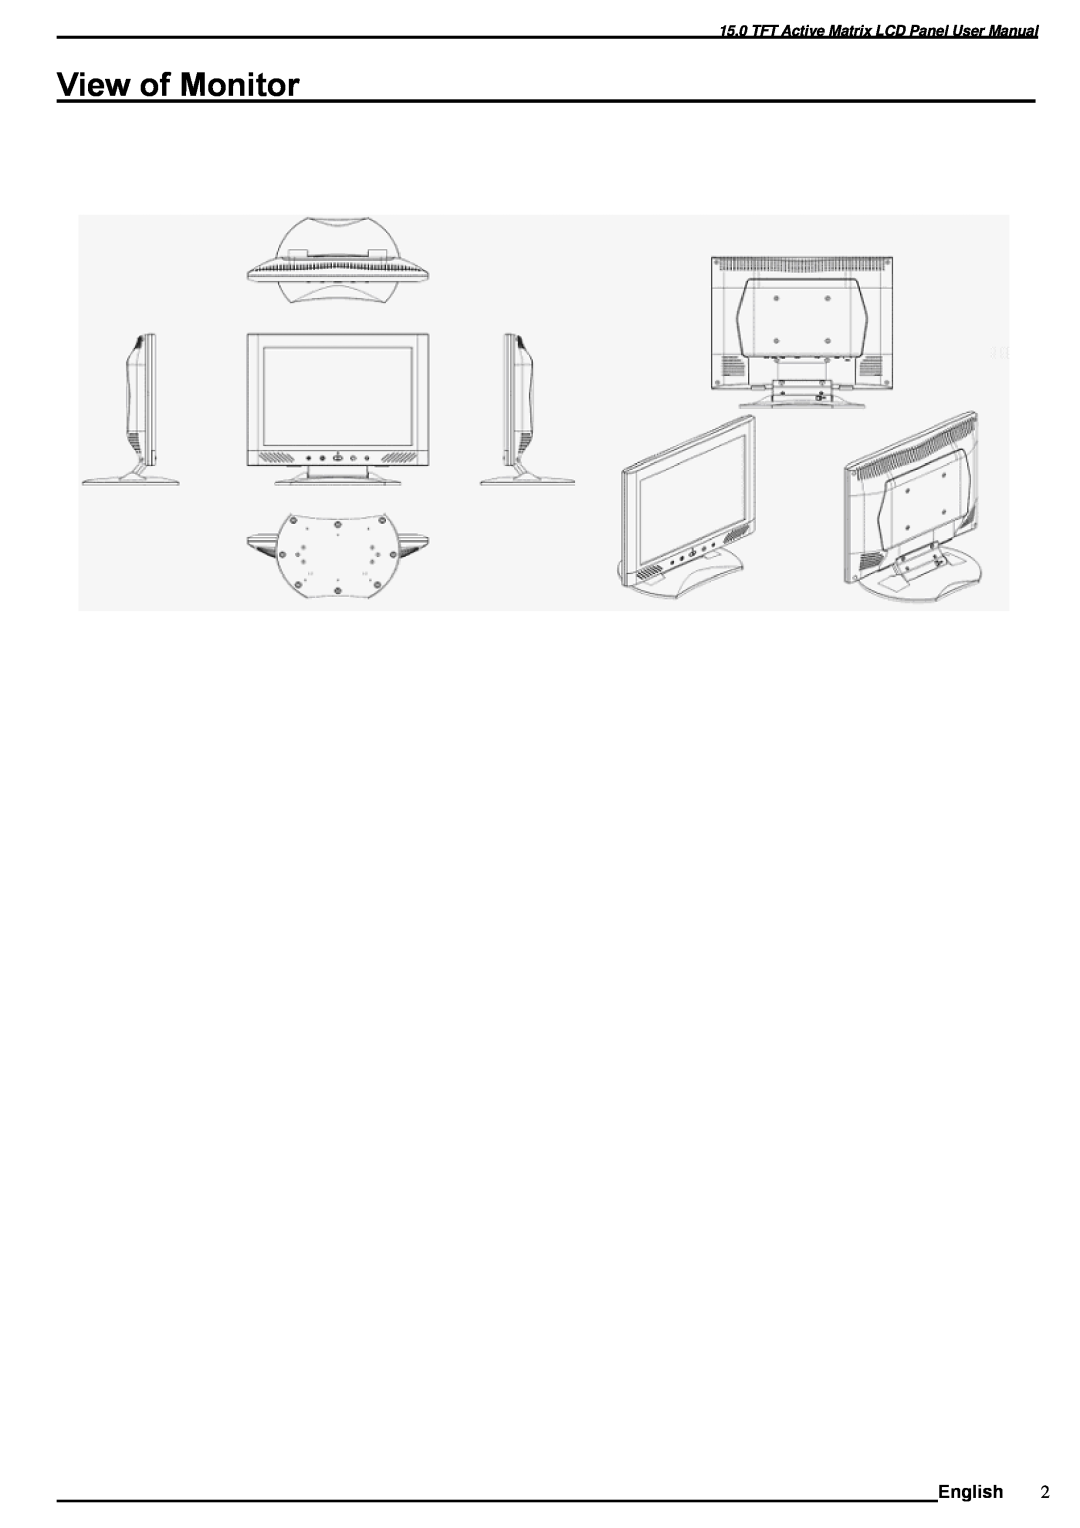 SOYO M15ES manual View of Monitor, TFT Active Matrix LCD Panel User Manual 